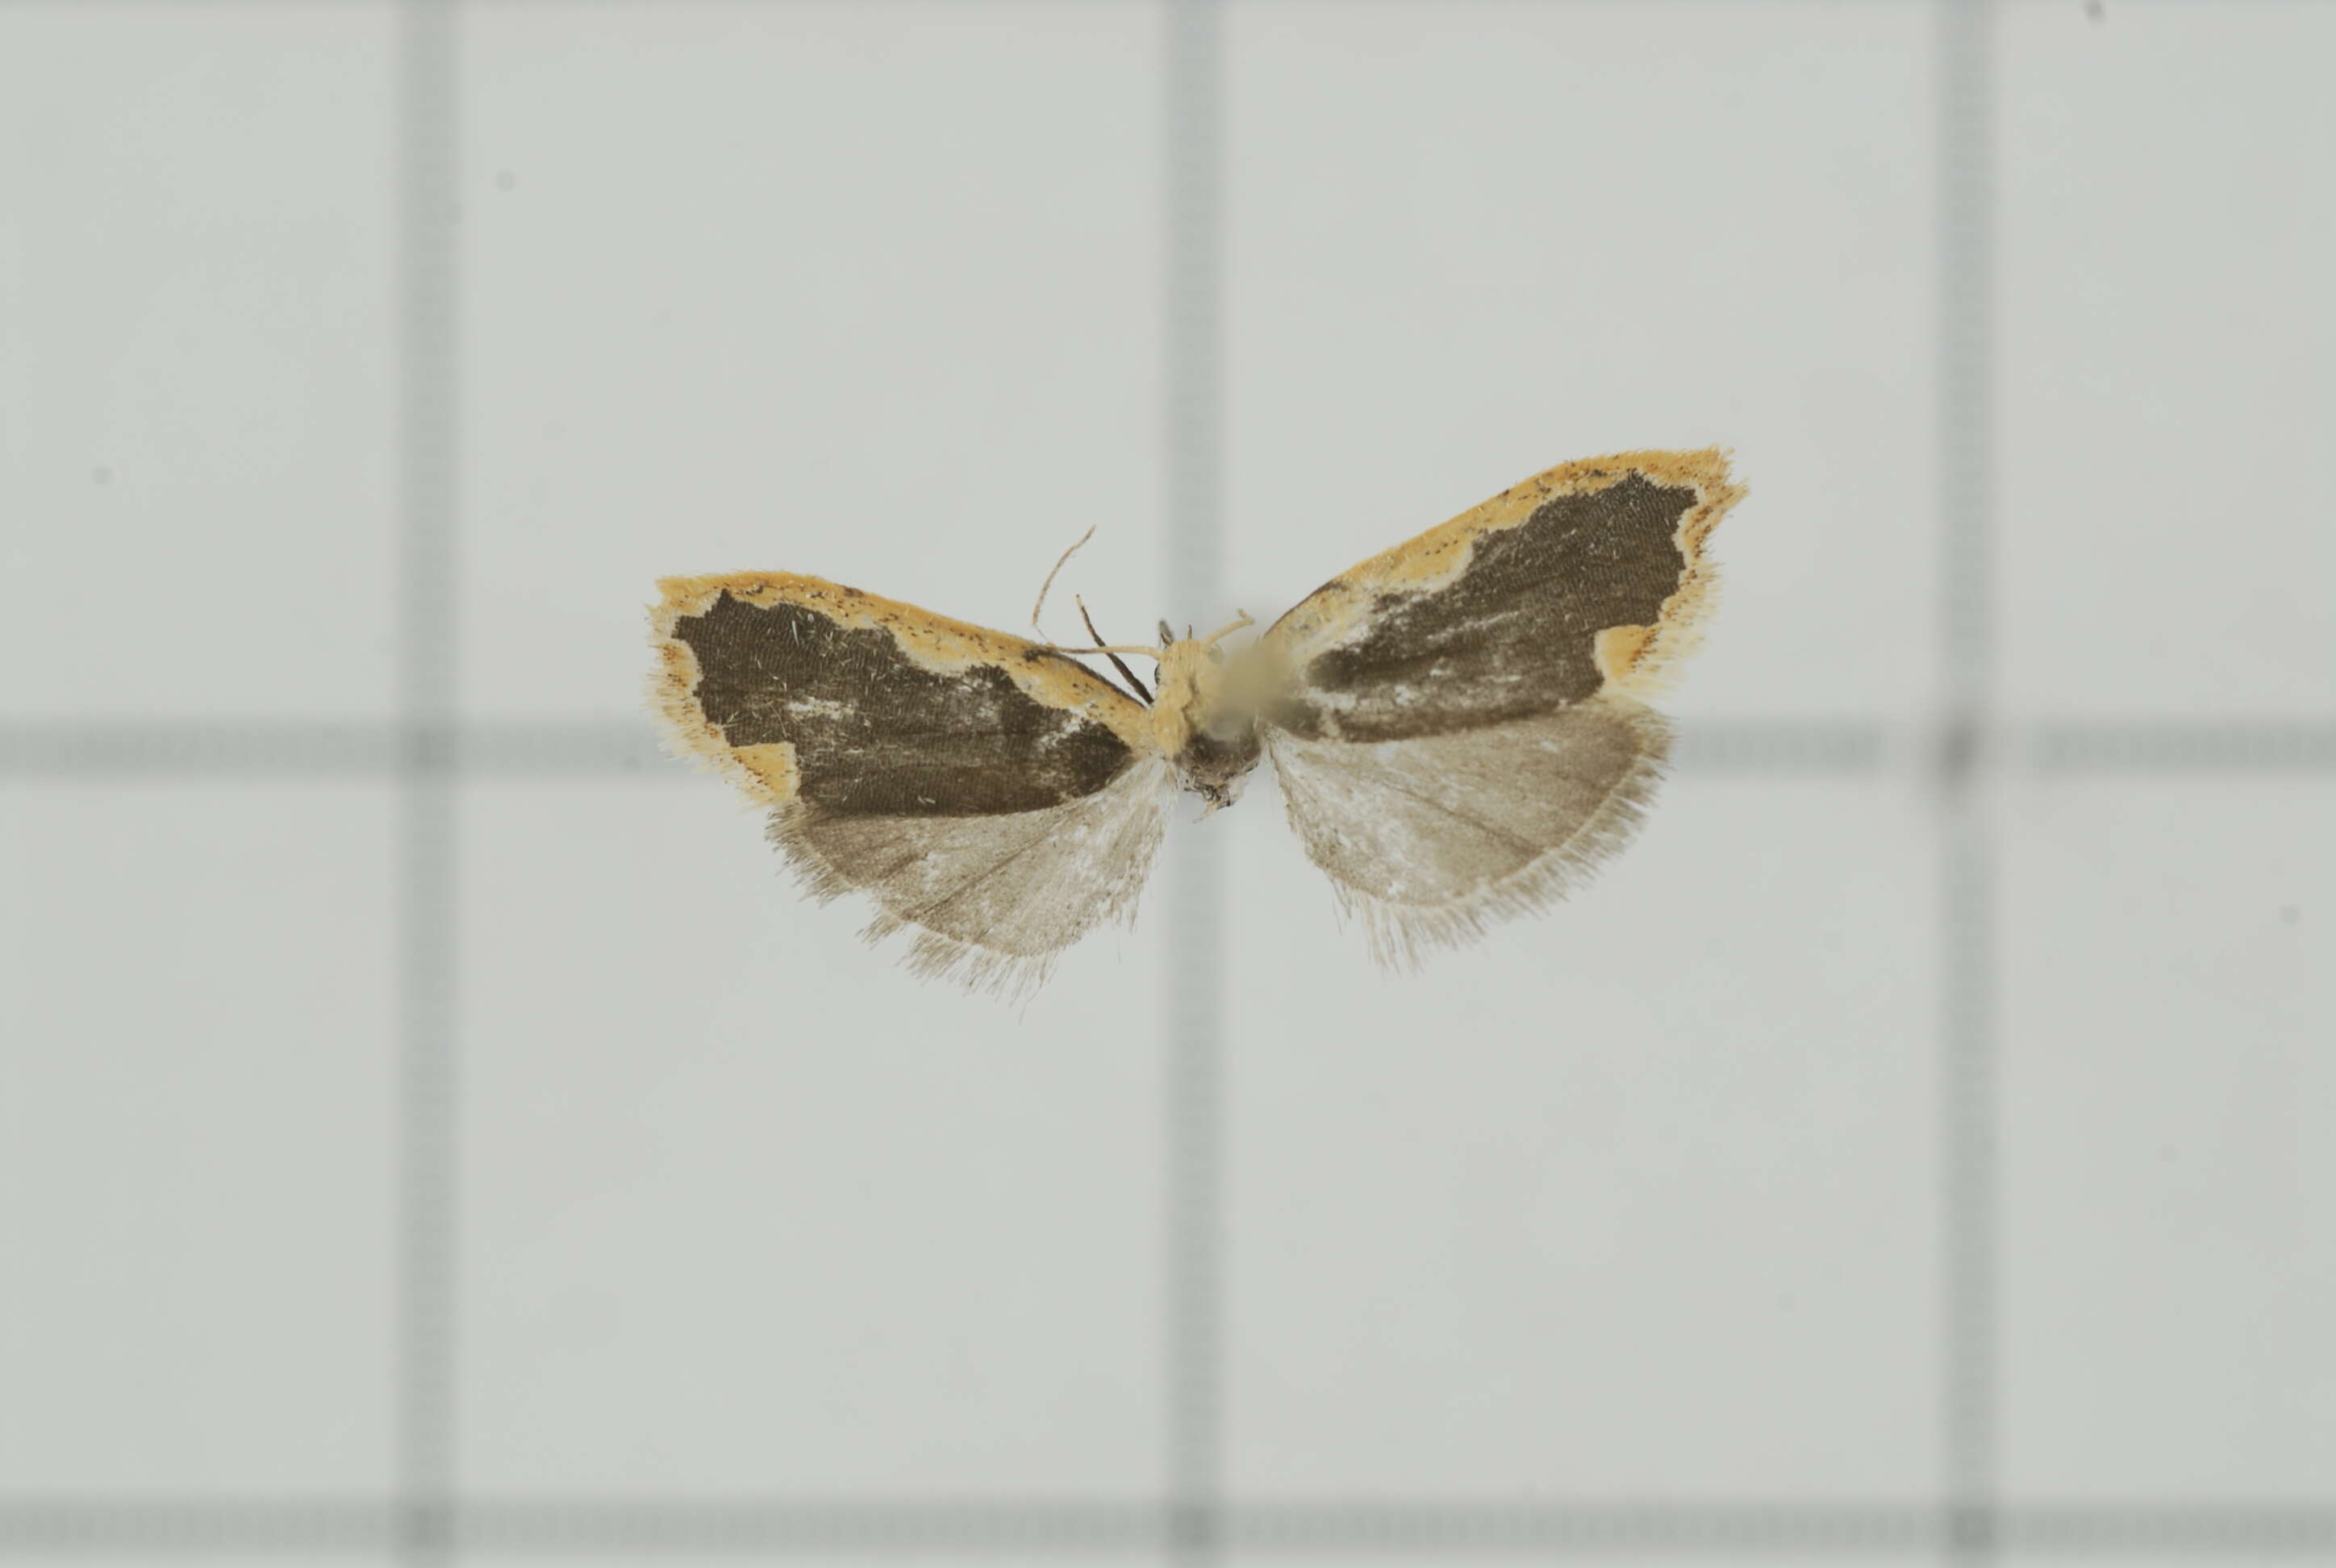 Image of Diduga flavicostata Snellen 1879